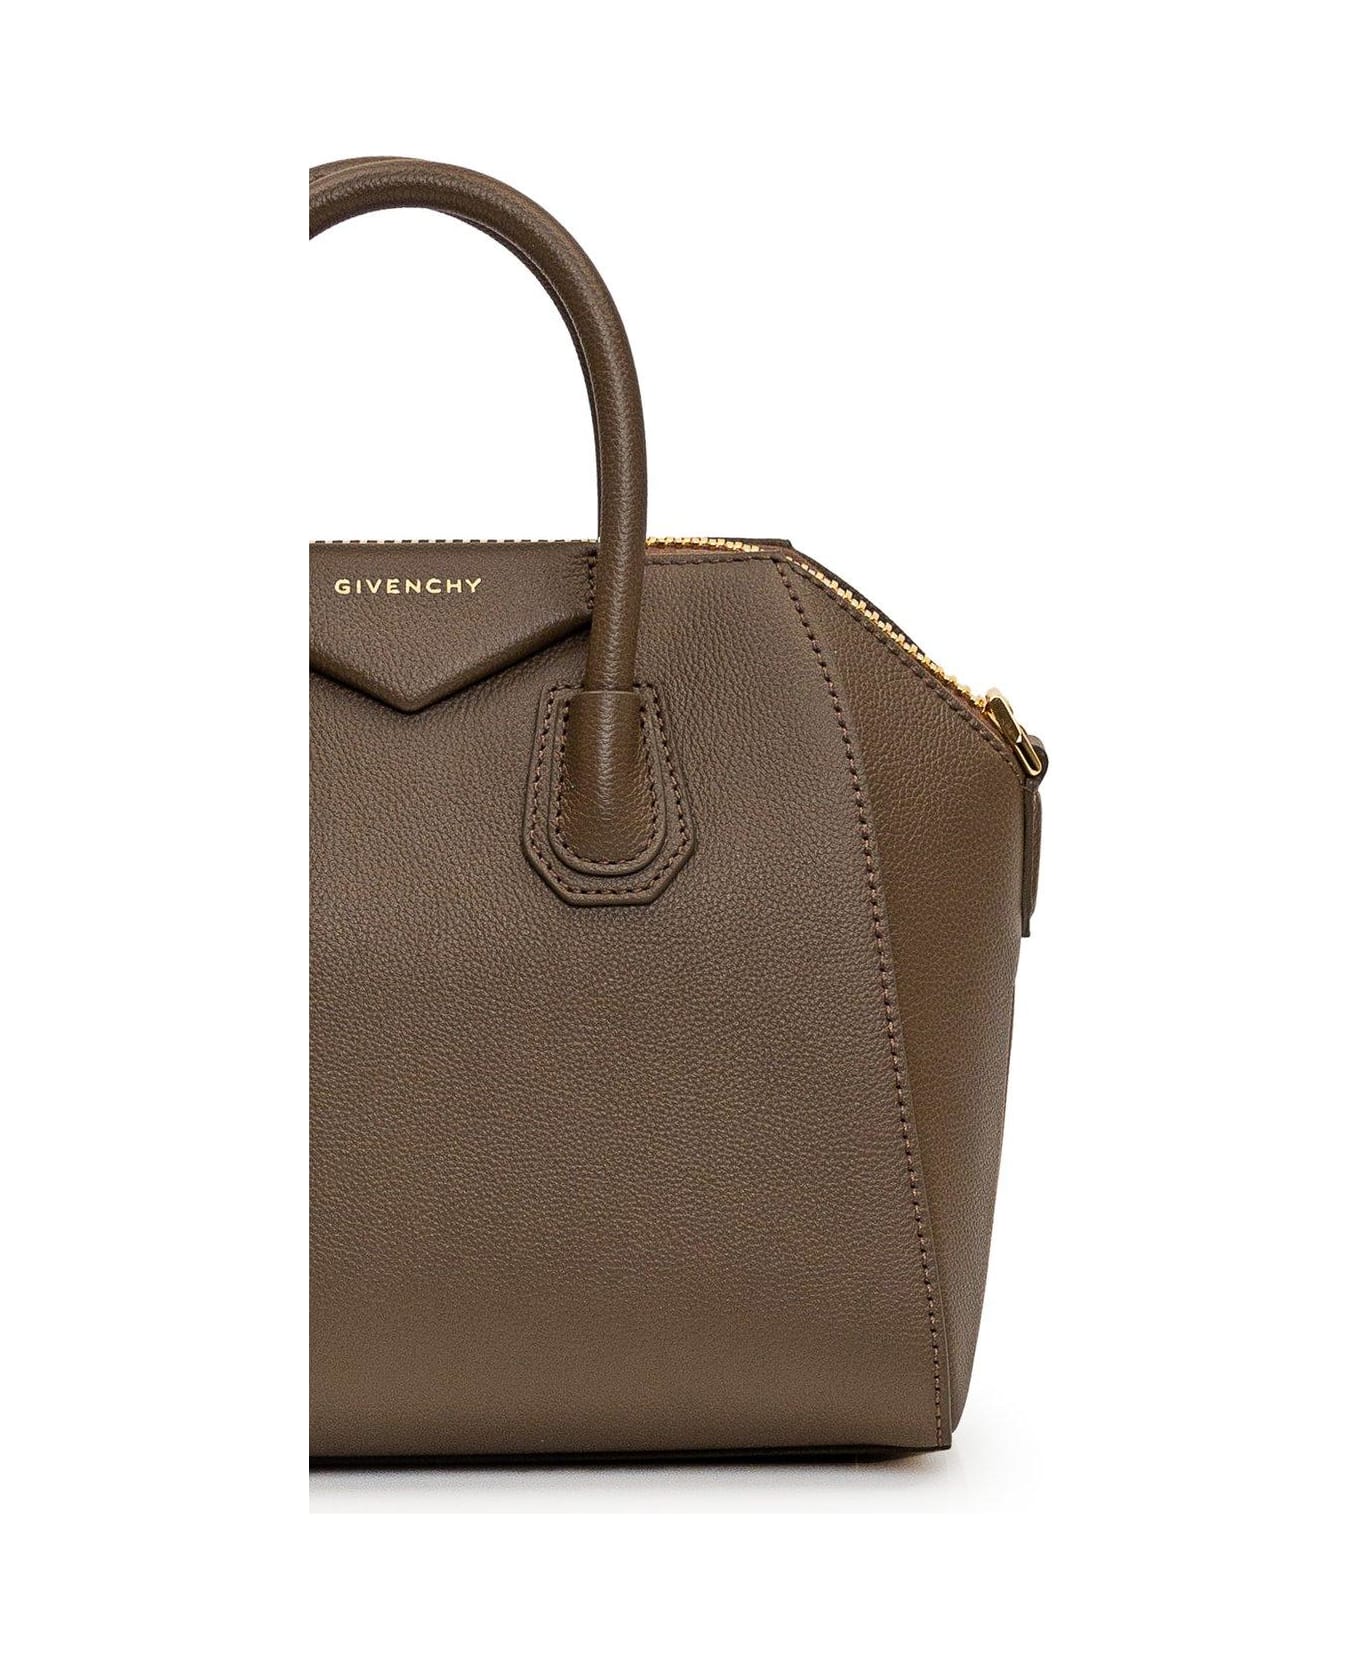 Givenchy Antigona Zip-up Top Handle Bag - Taupe